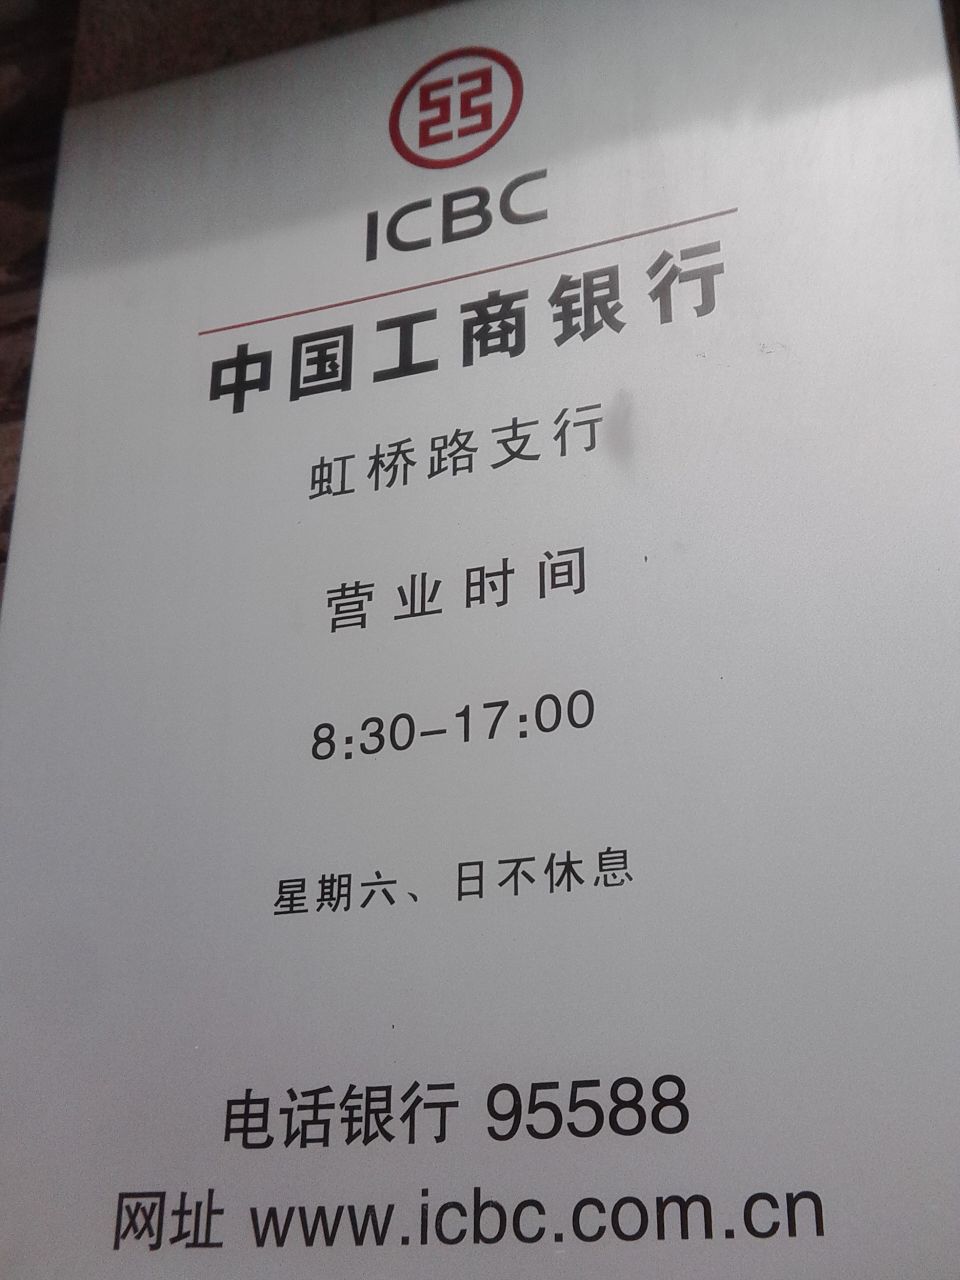 中国工商银行24小时自助银行服务(虹桥路支行)